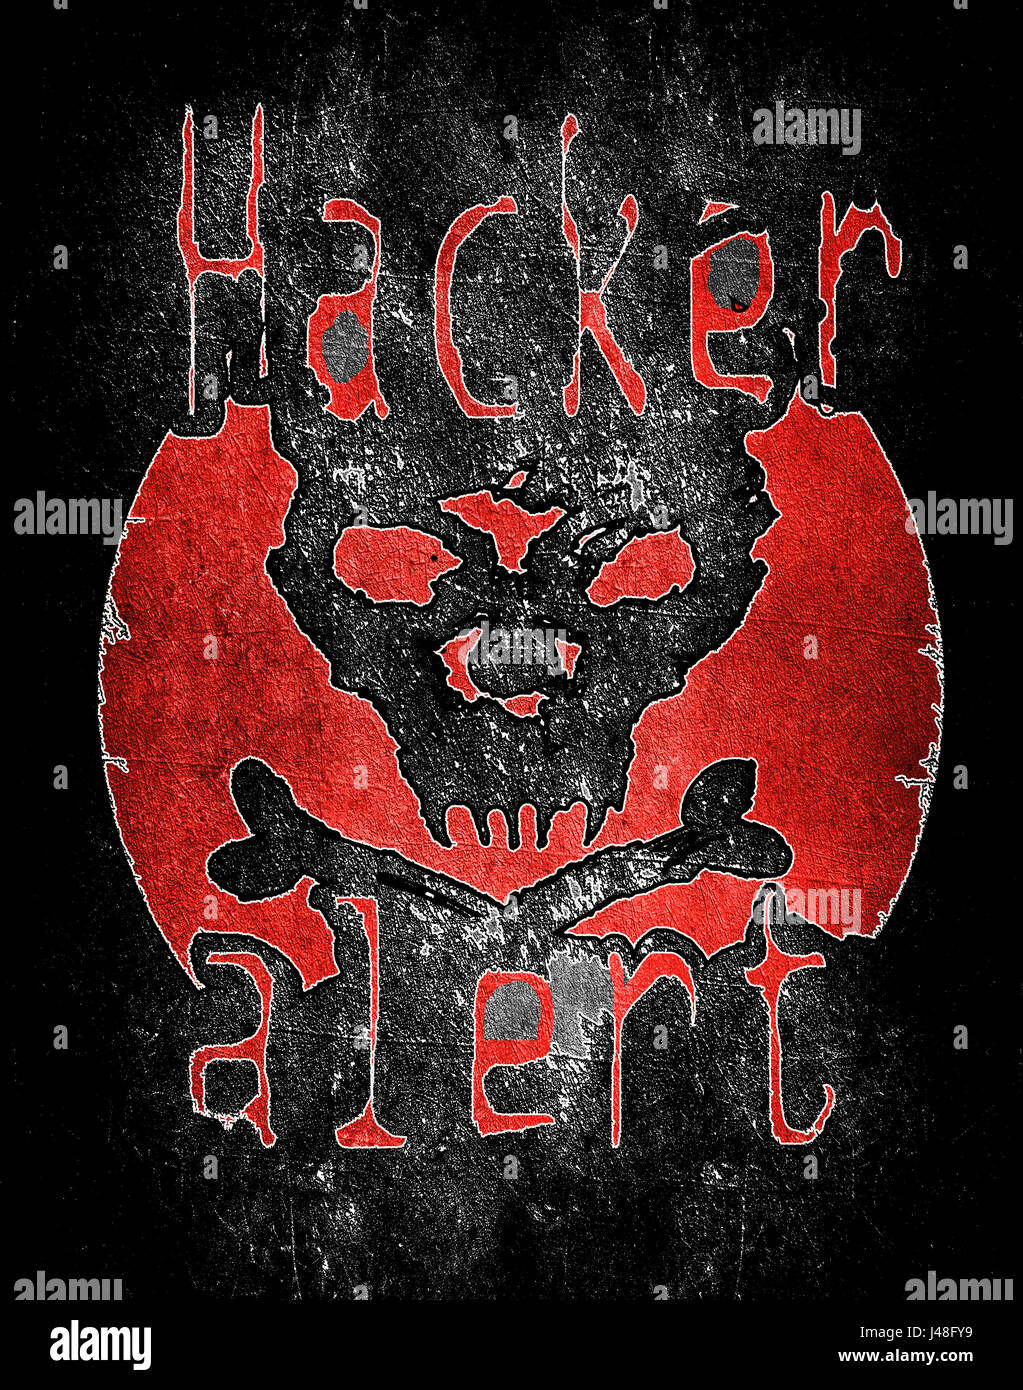 hacker alert with skull digital illustration Stock Photo